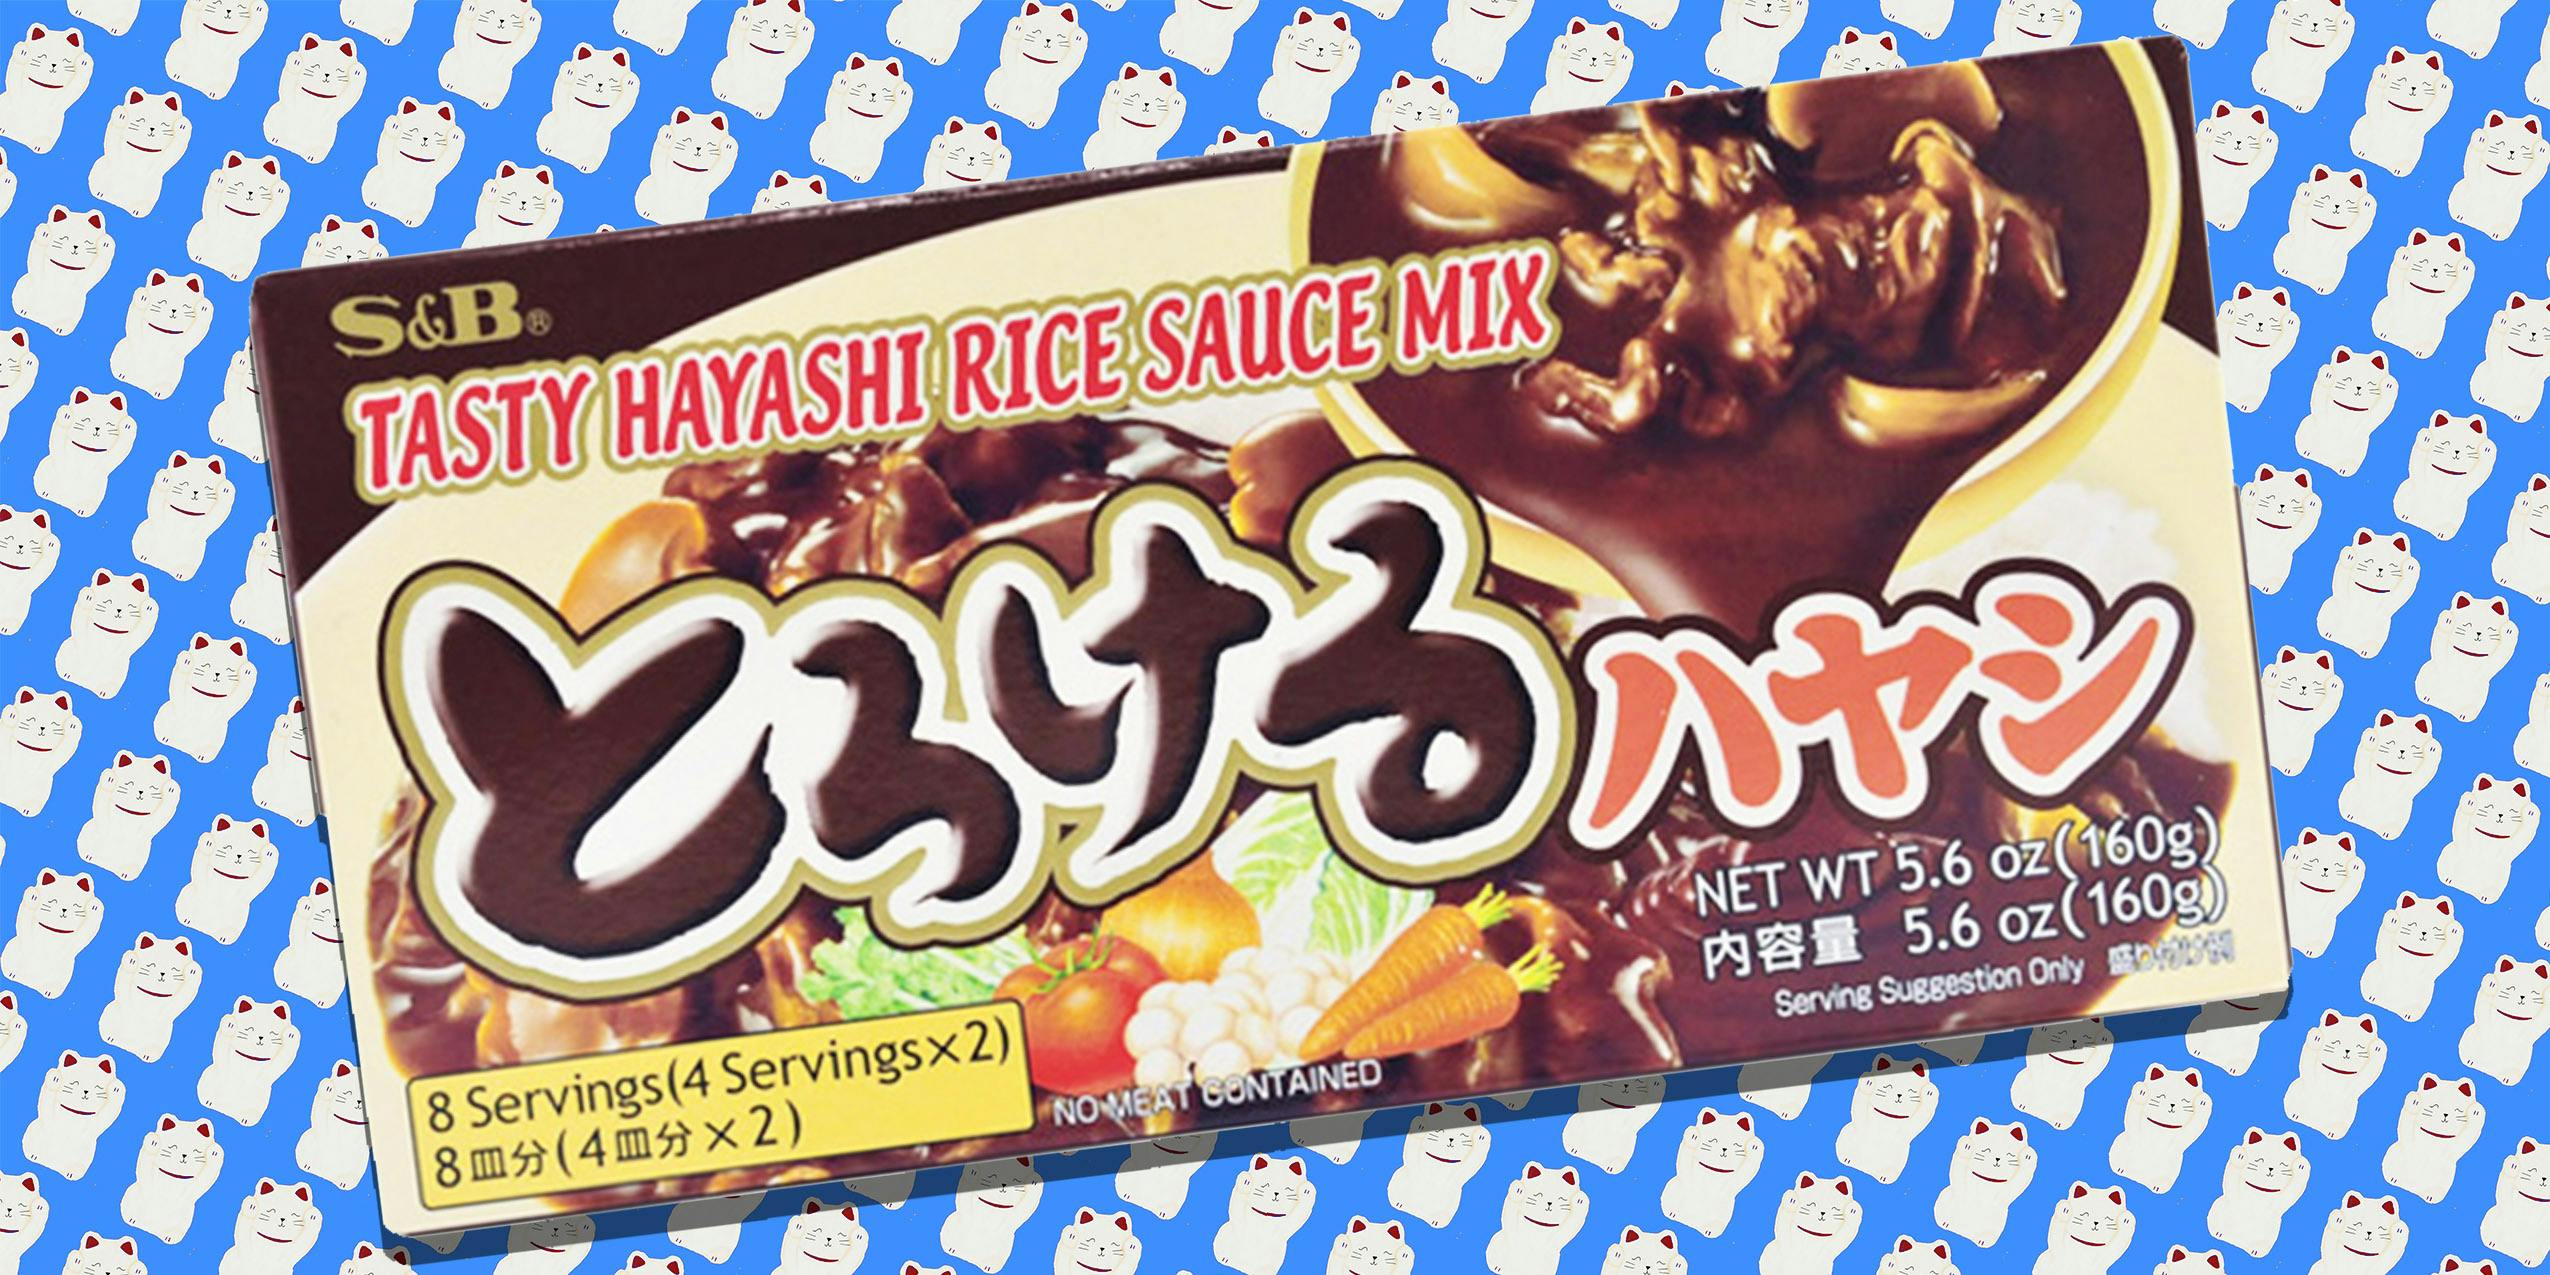 hayashi rice sauce mix